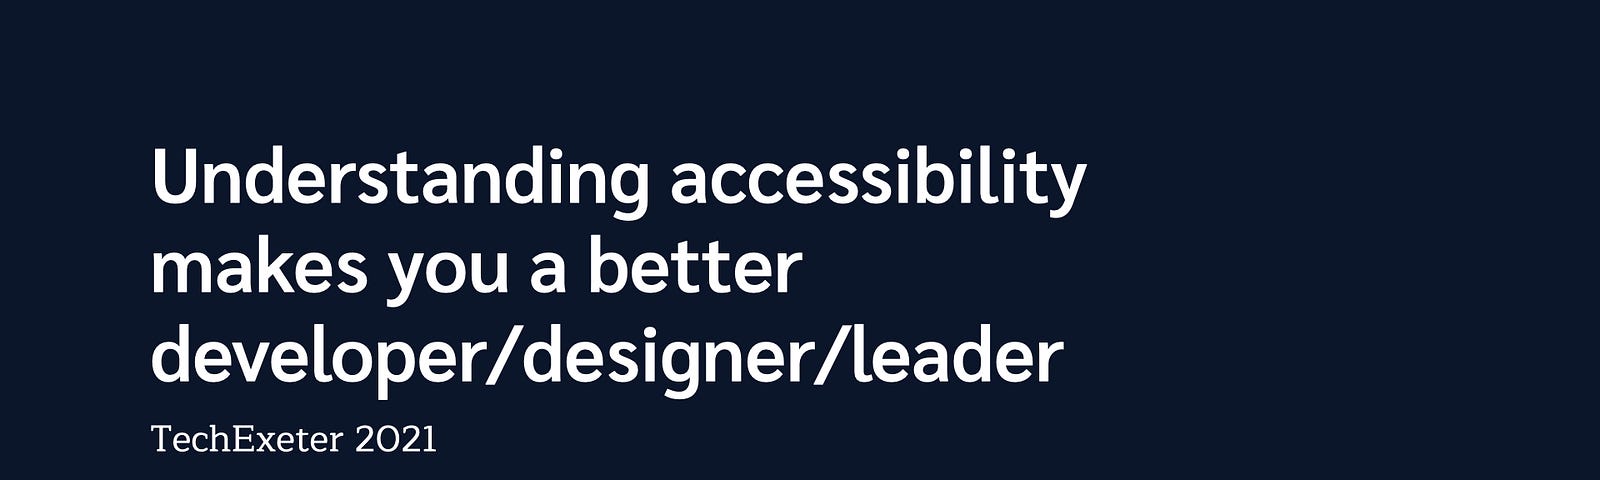 Understanding accessibility makes you a better developer/designer/leader